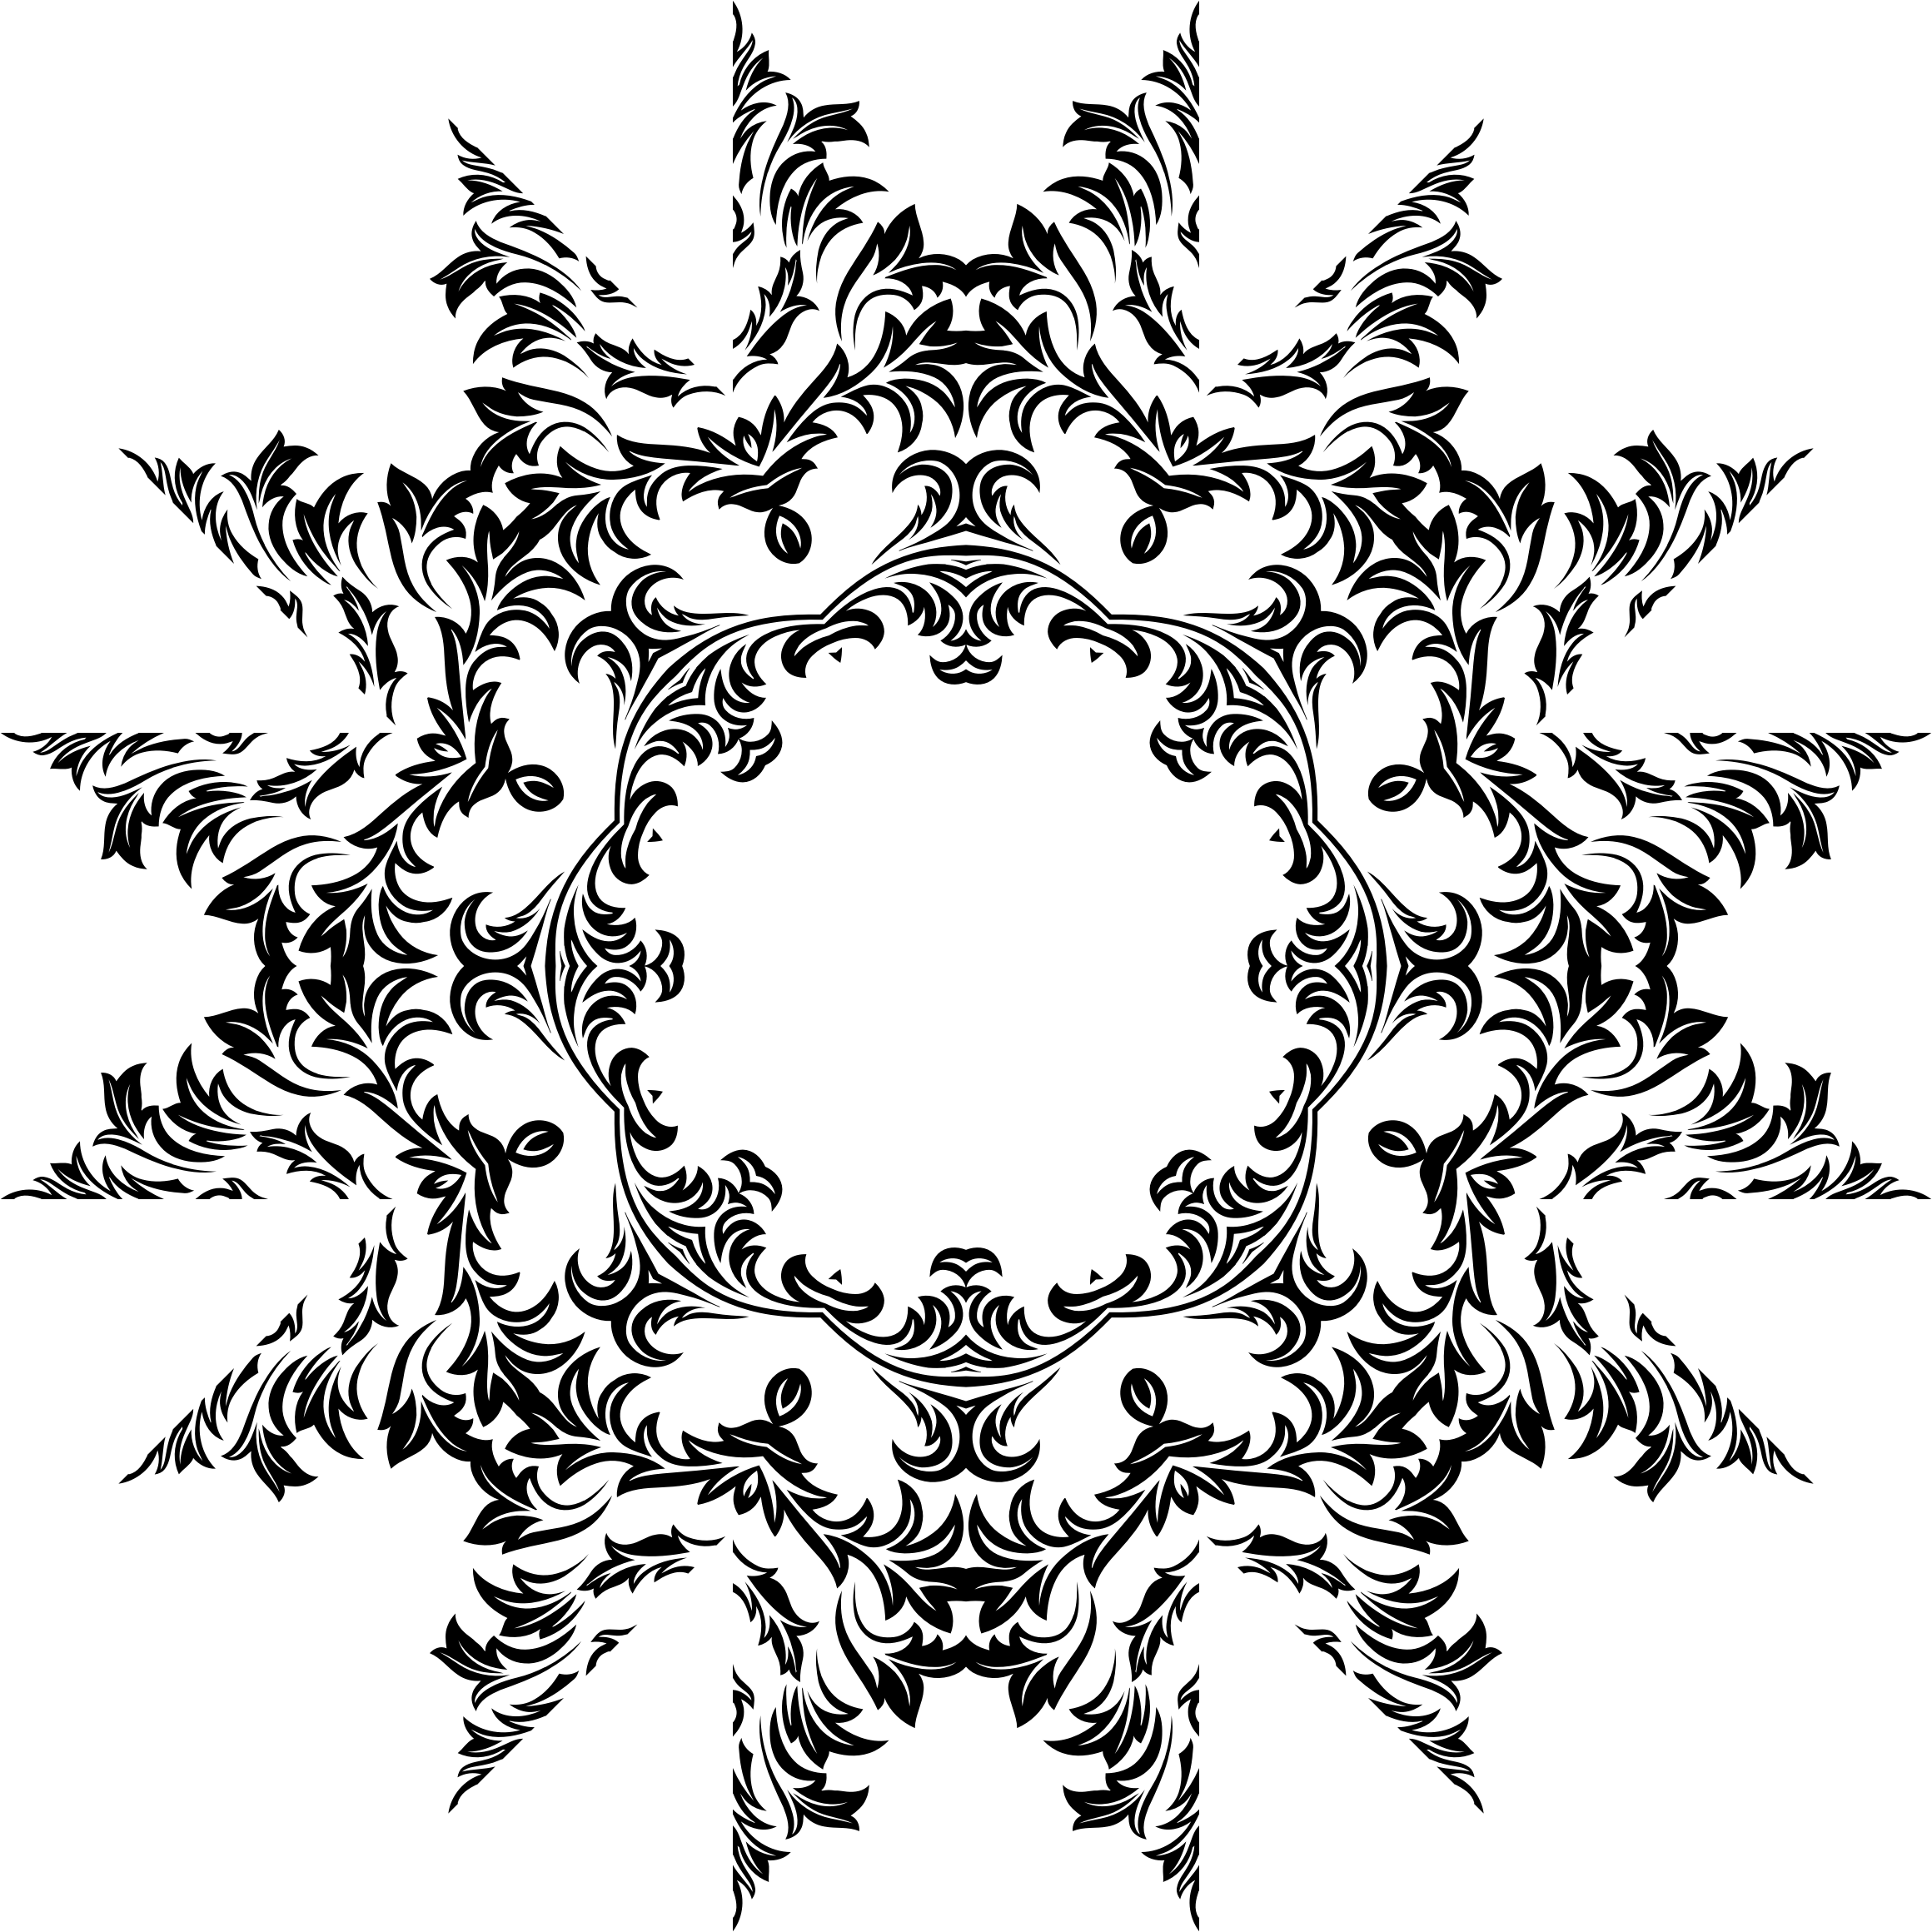 cougar clipart design logo